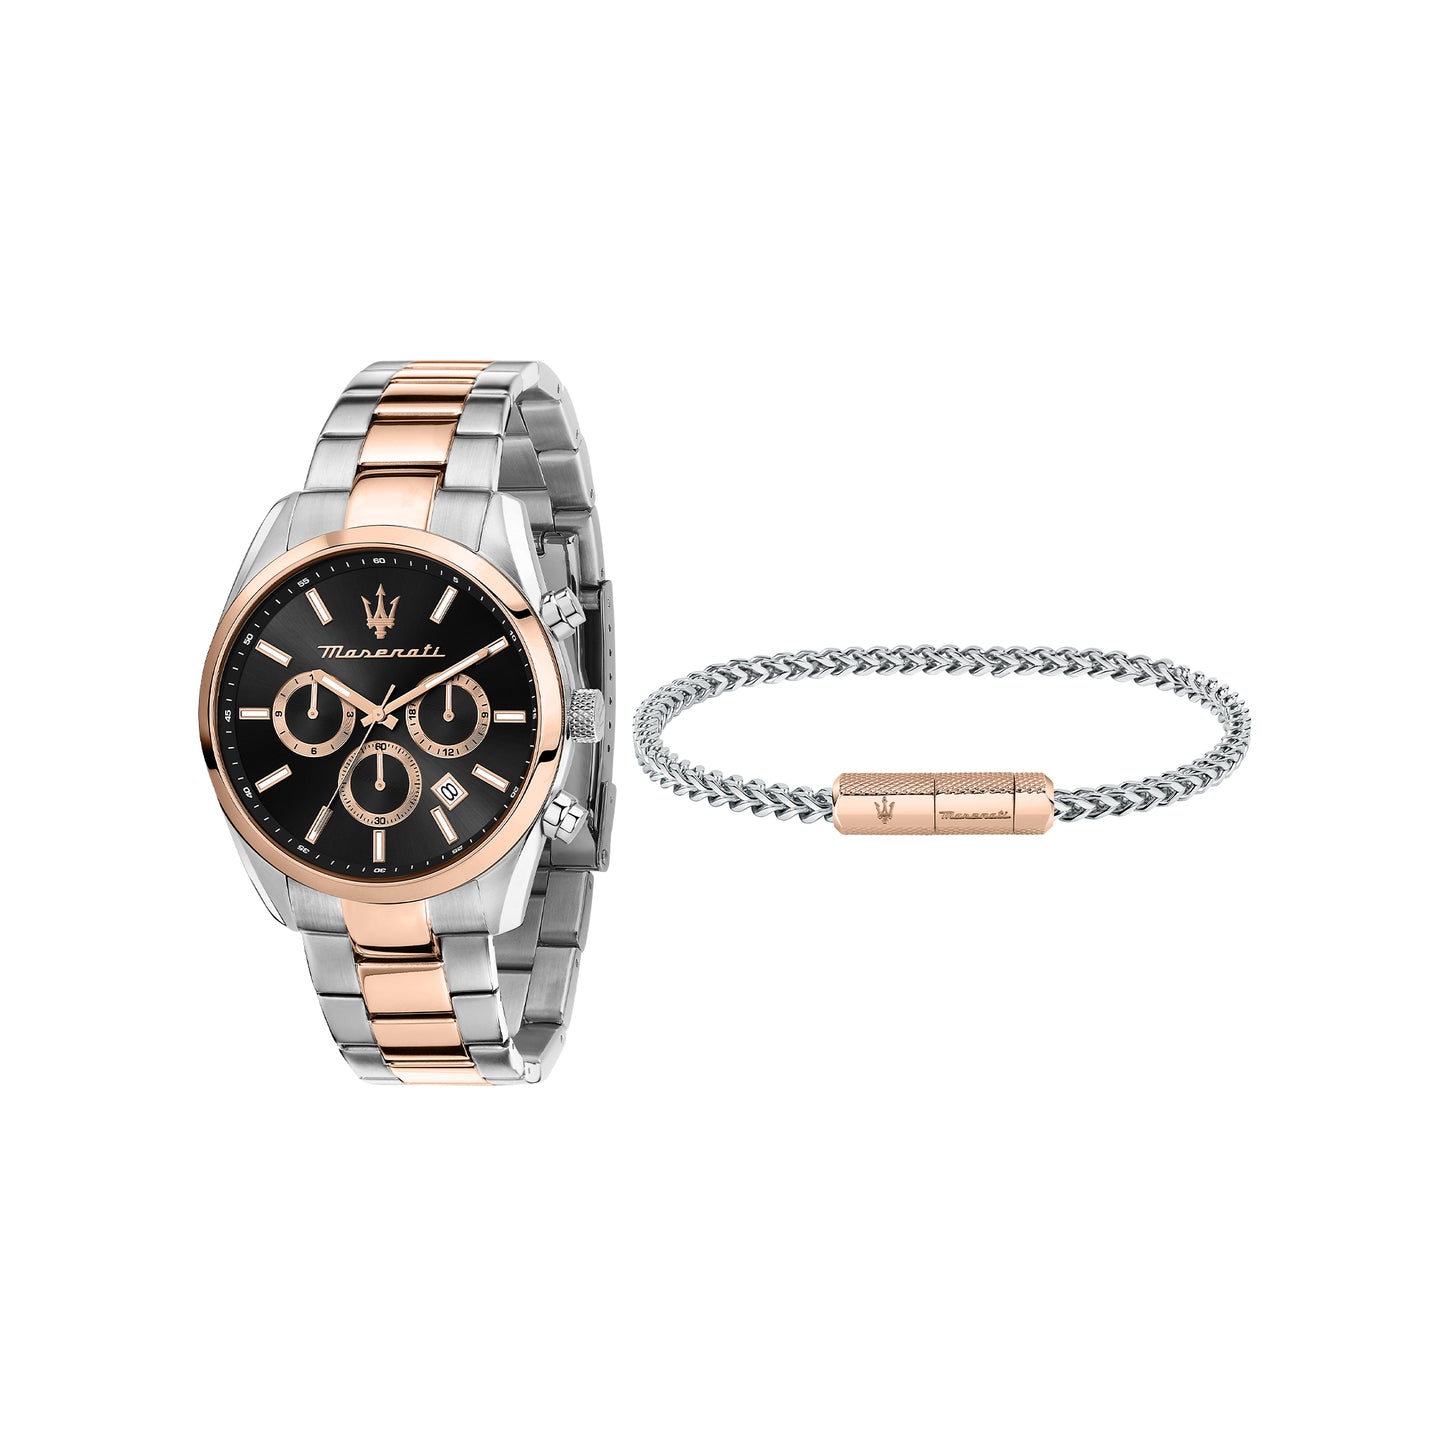 Attrazione Watch and Bracelet Gift Set